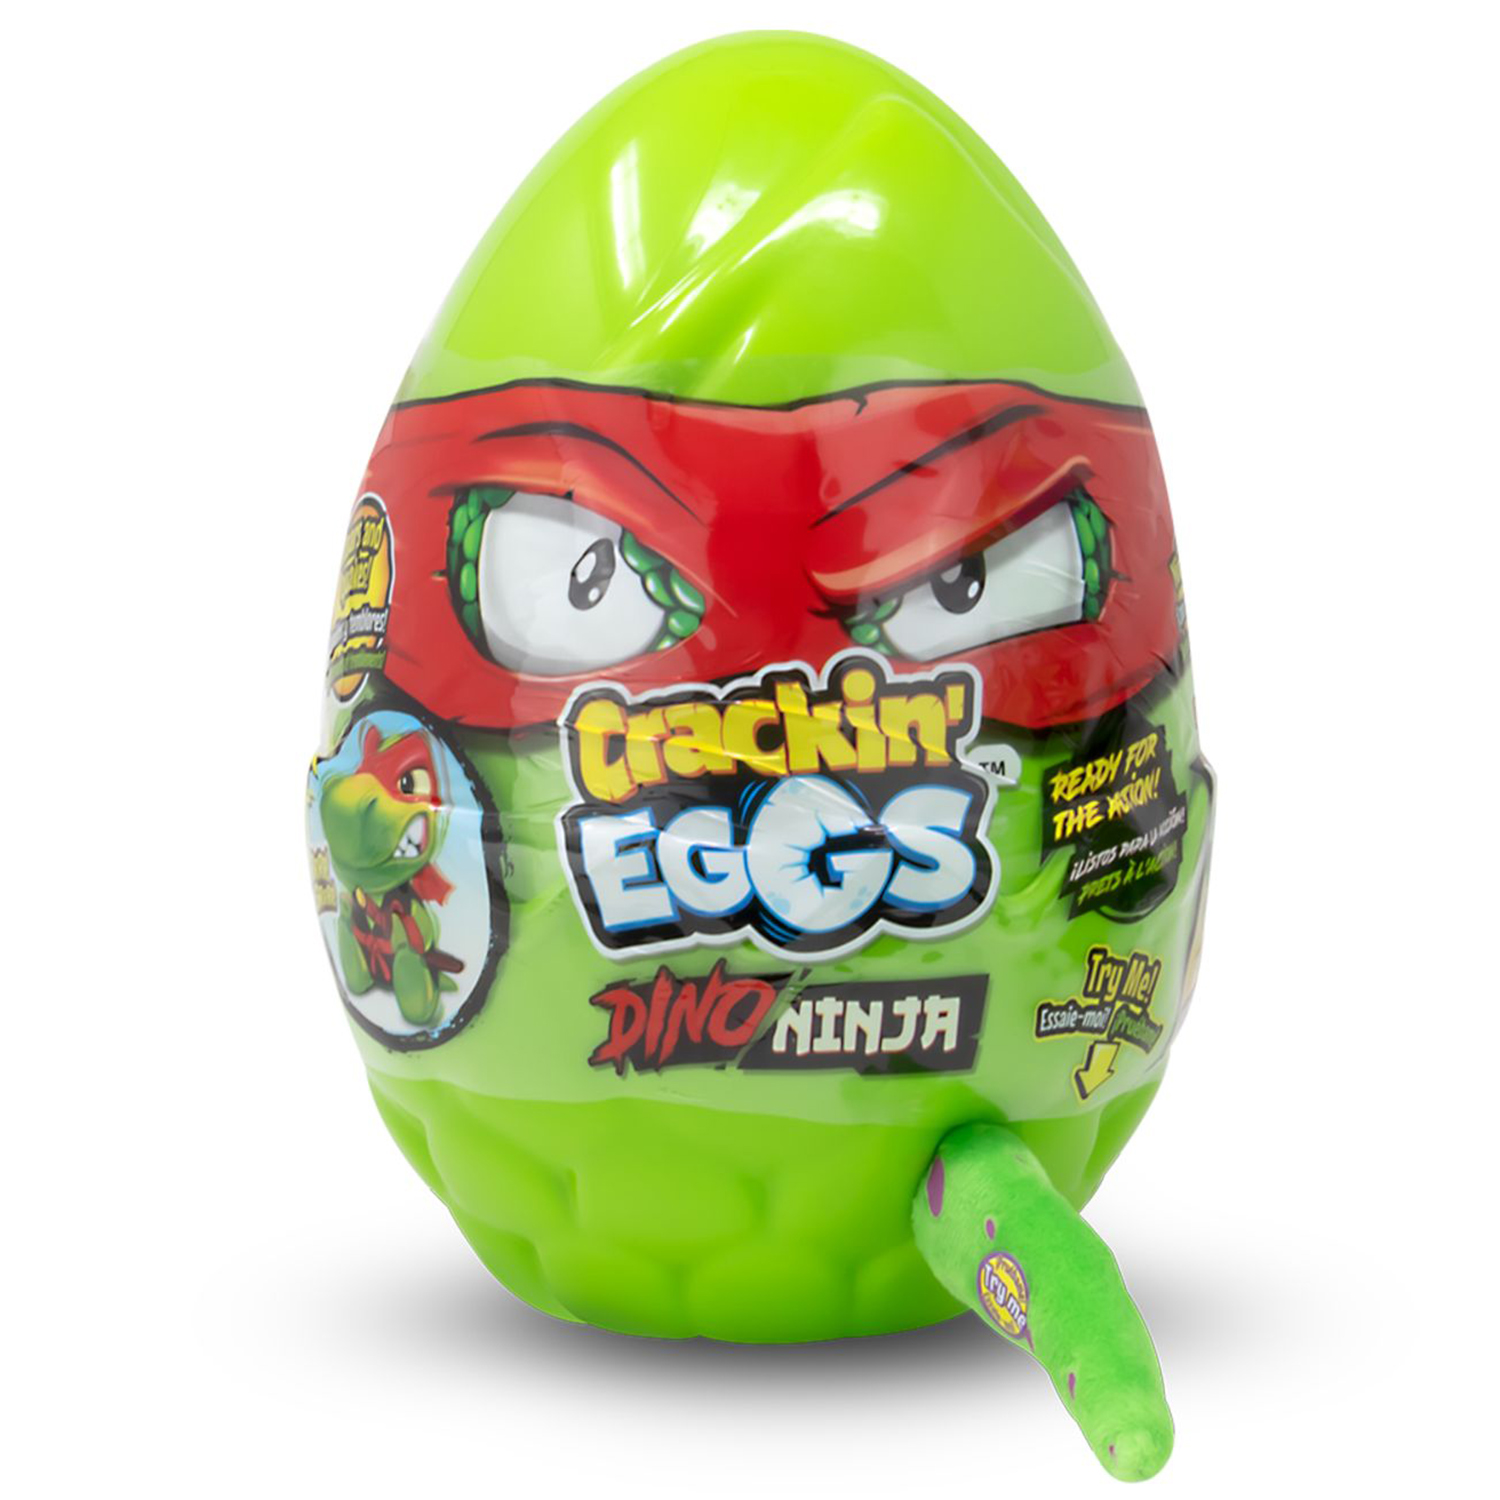 Мягкая игрушка Crackin' Eggs Динозавр зеленый в яйце, серия Ниндзя, 22 см мягкая игрушка crackin eggs динозавр 12 см в яйце серый sk012